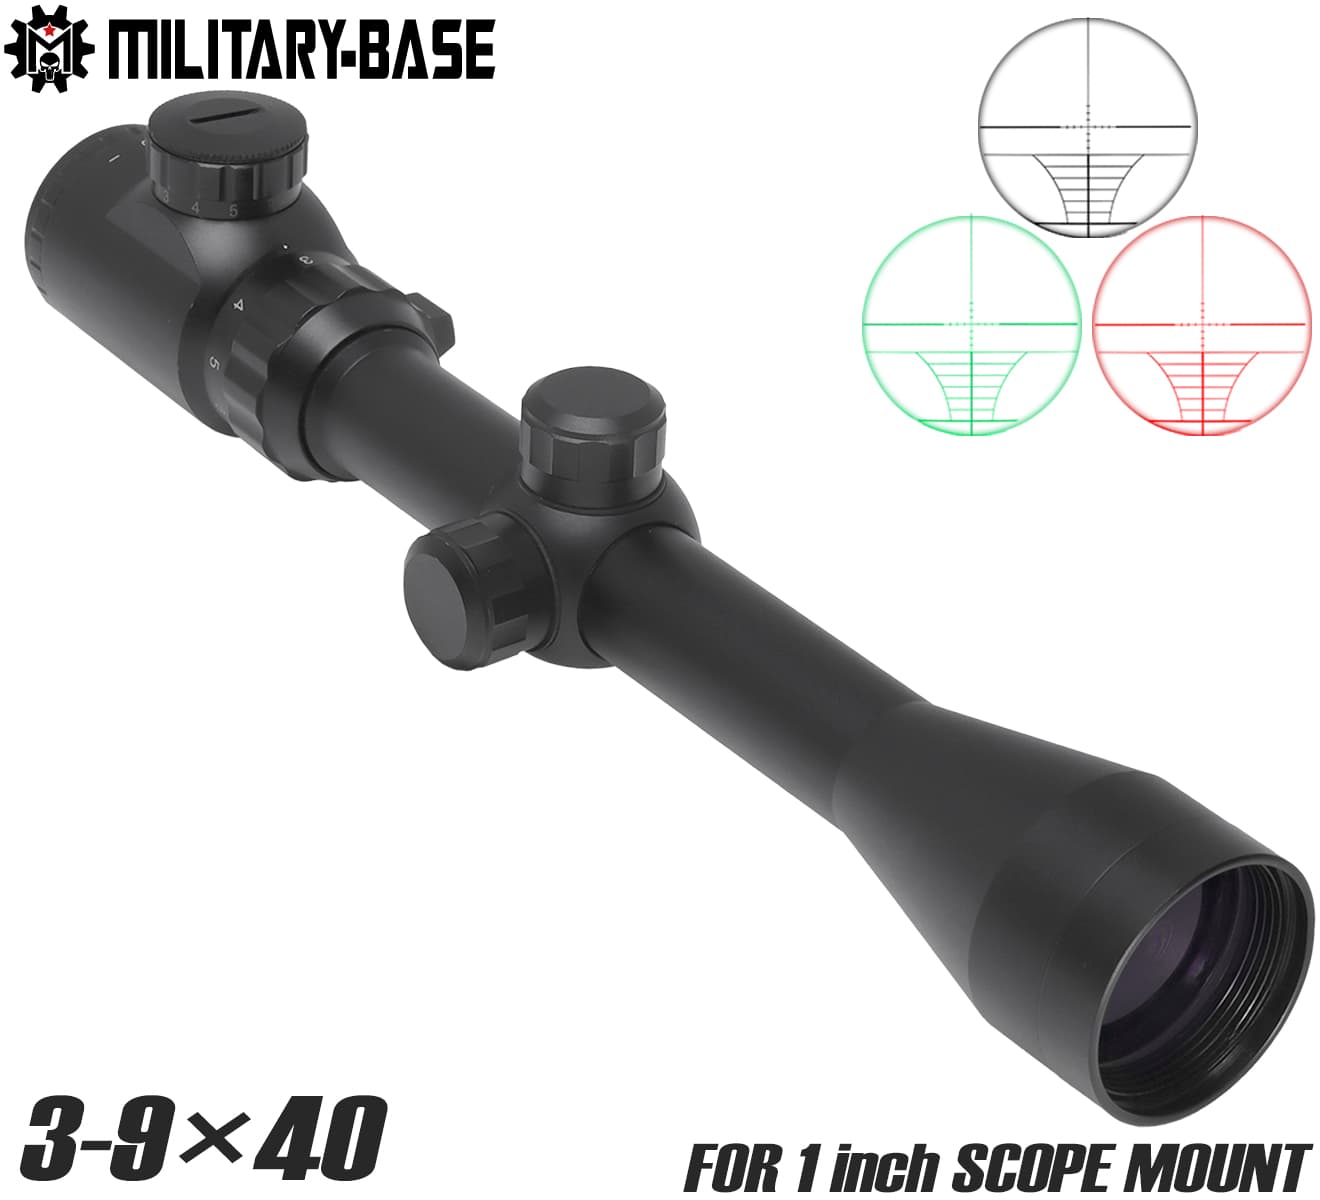 MILITARY BASE 3-9×40MDRF+EG イルミネーション ライフルスコープ 1インチボディ